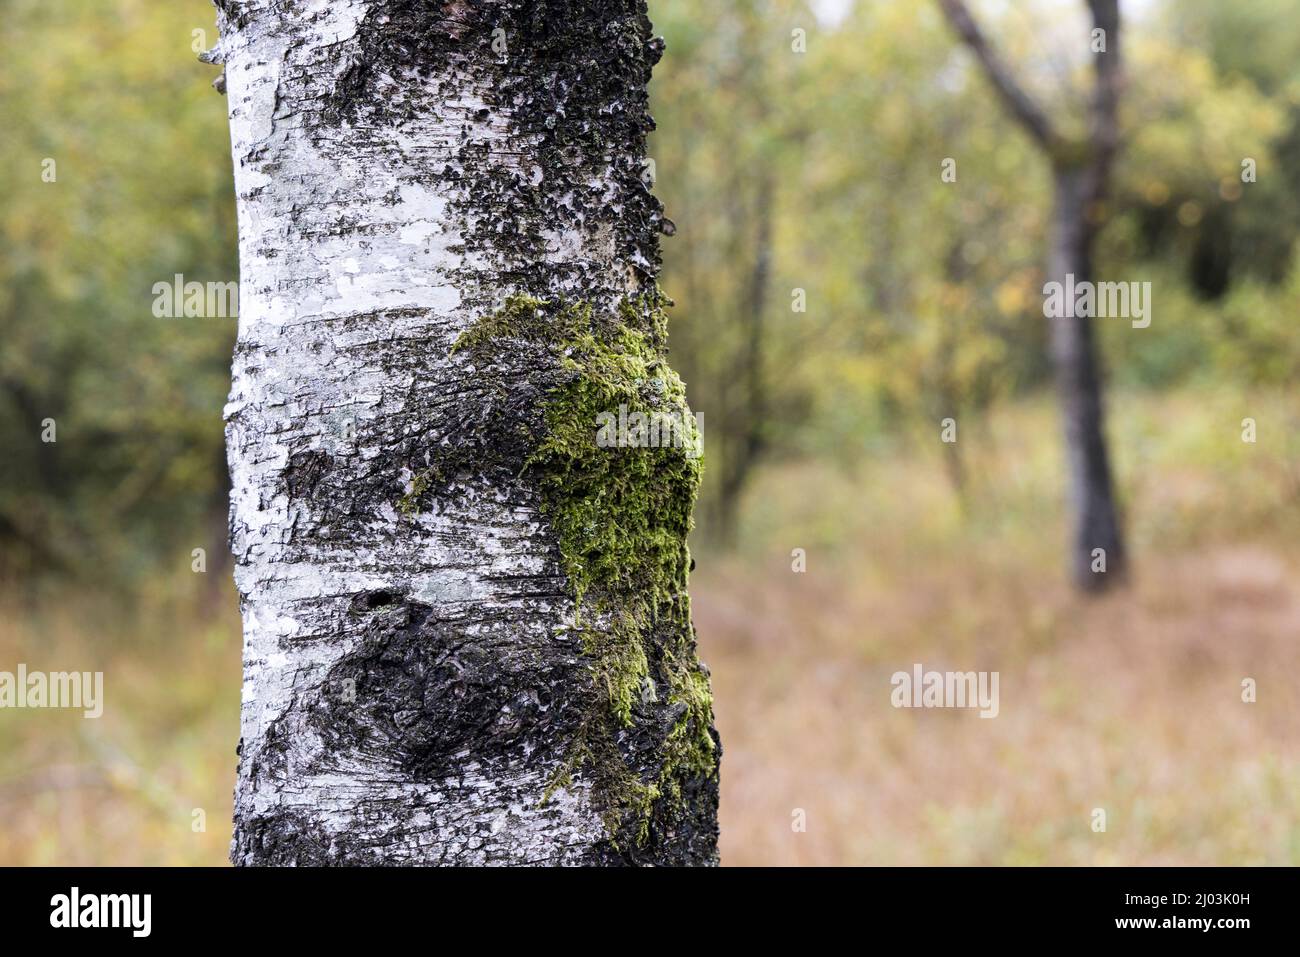 Birch tree bark in Tarn Moss nature reserve, Malham Tarn, Yorkshire Dales, UK Stock Photo